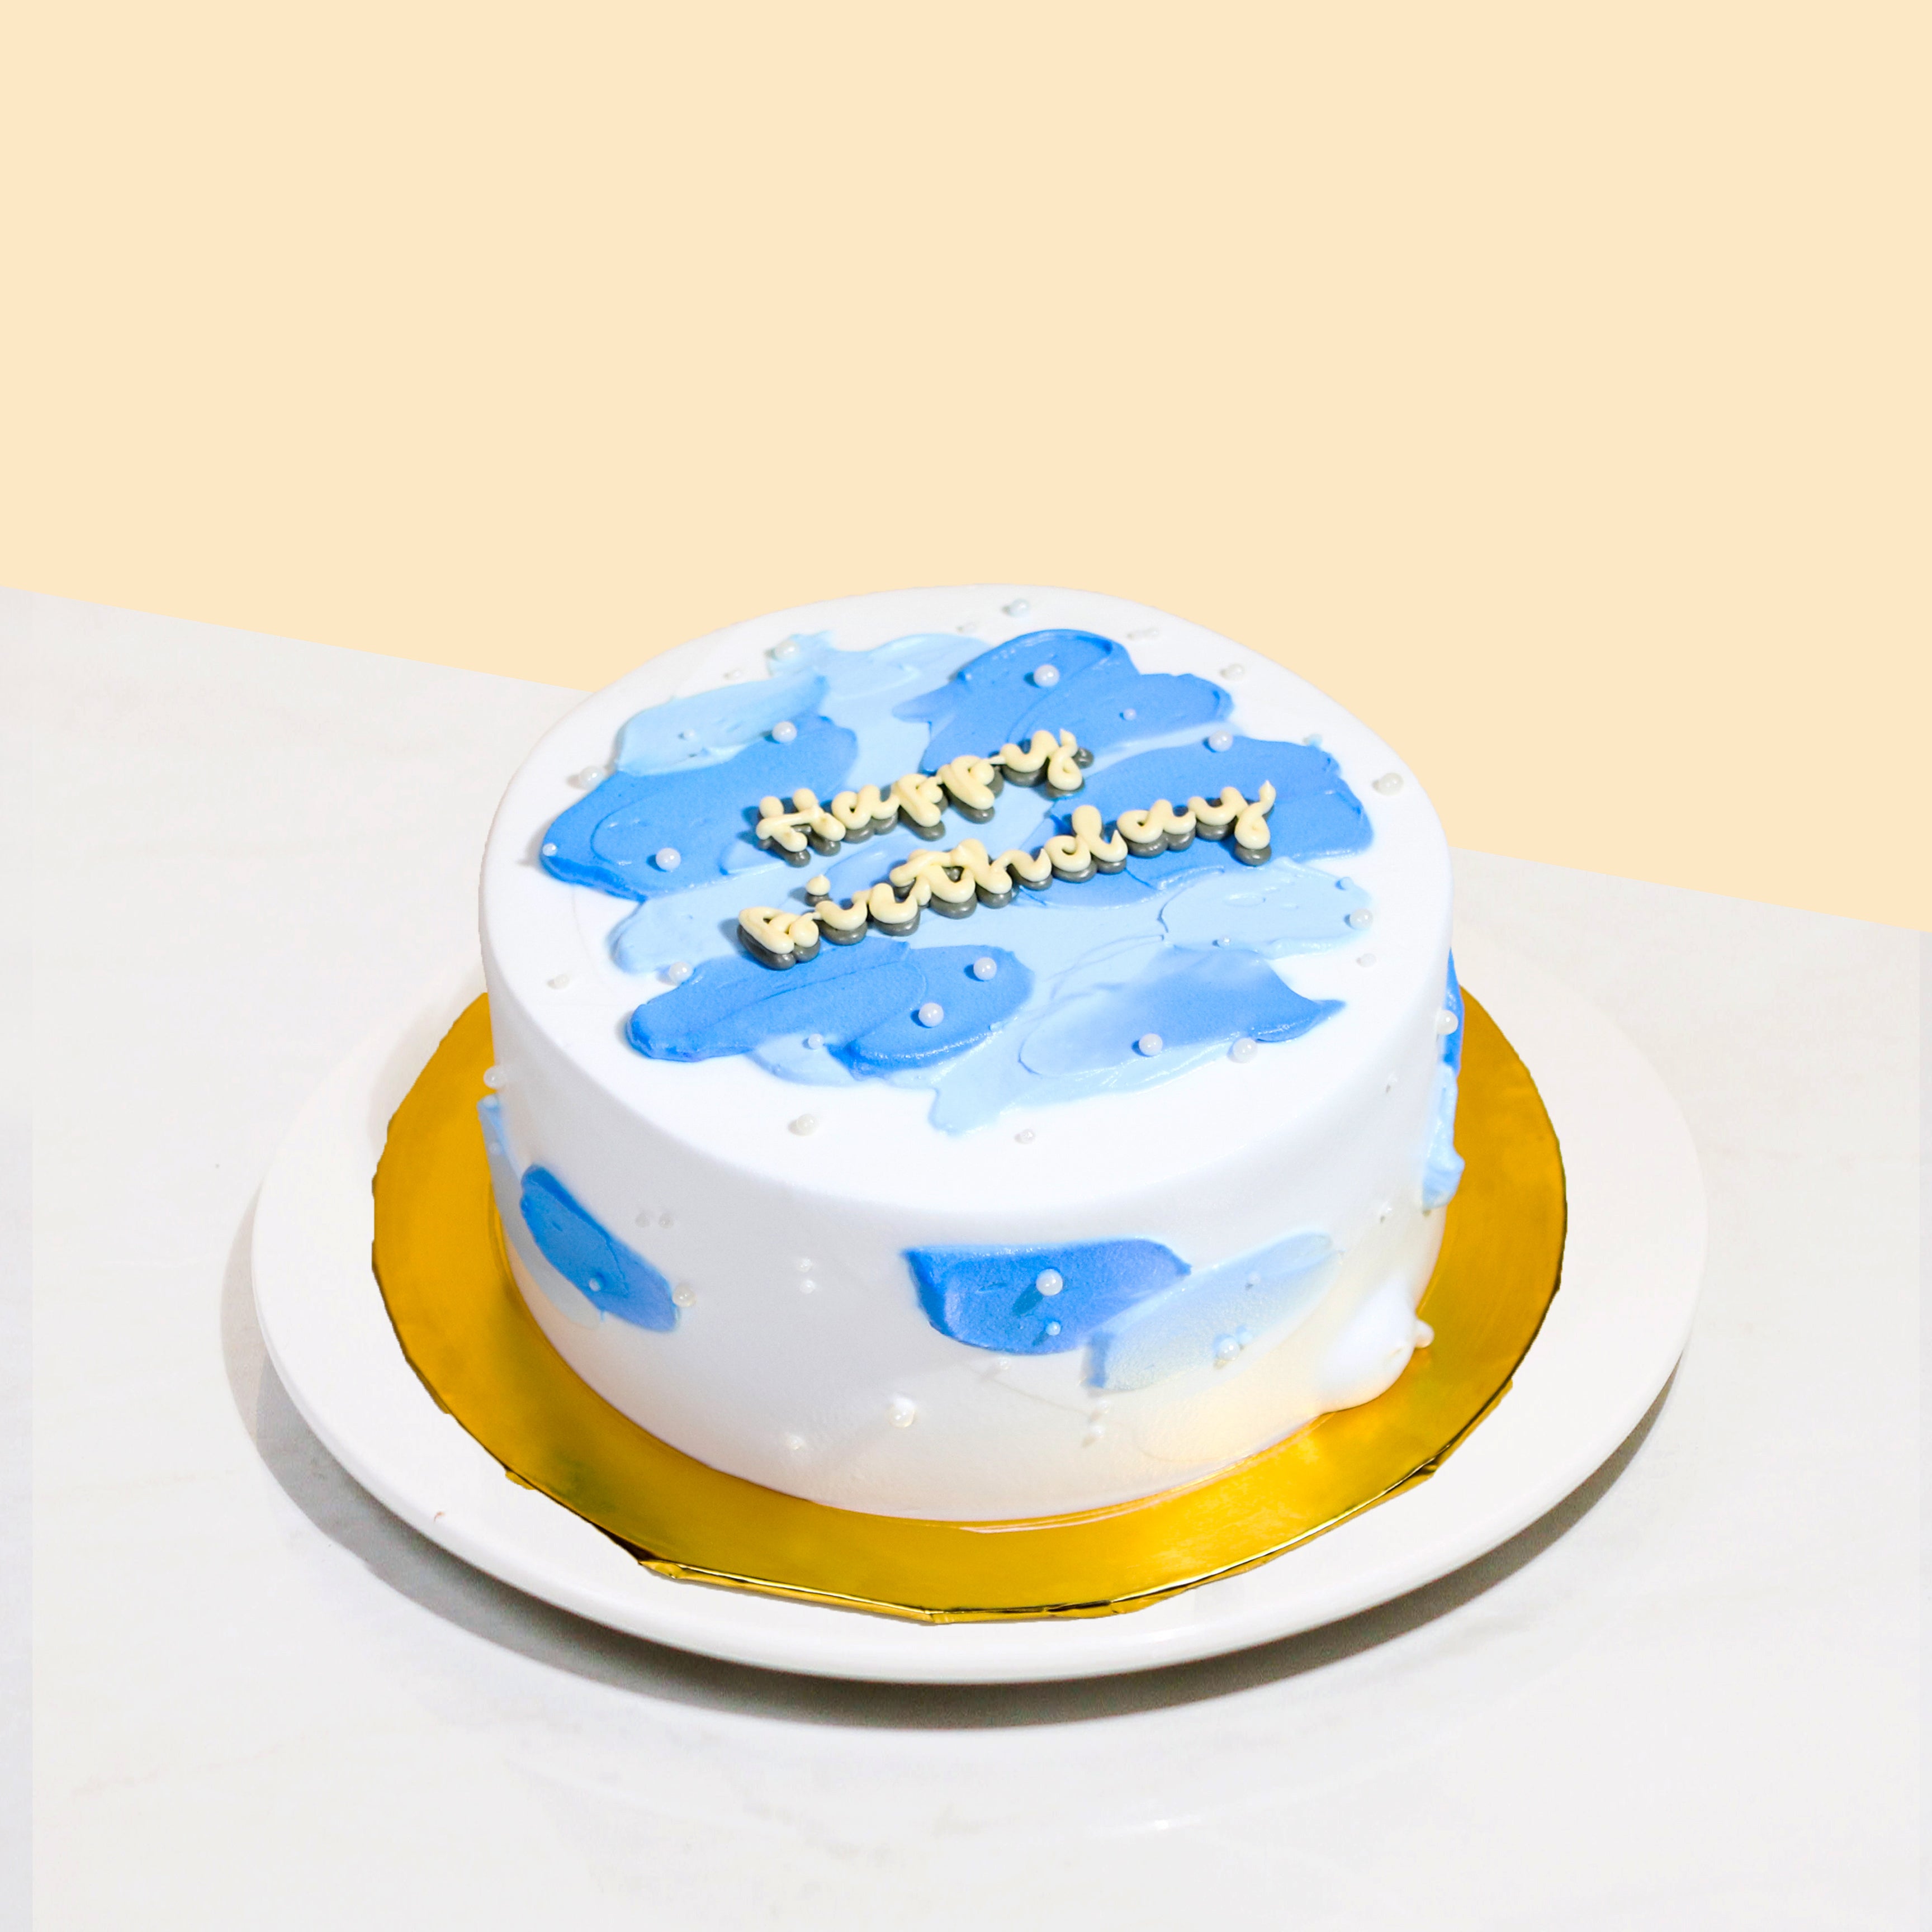 Mr Blue's cake - jaraCake